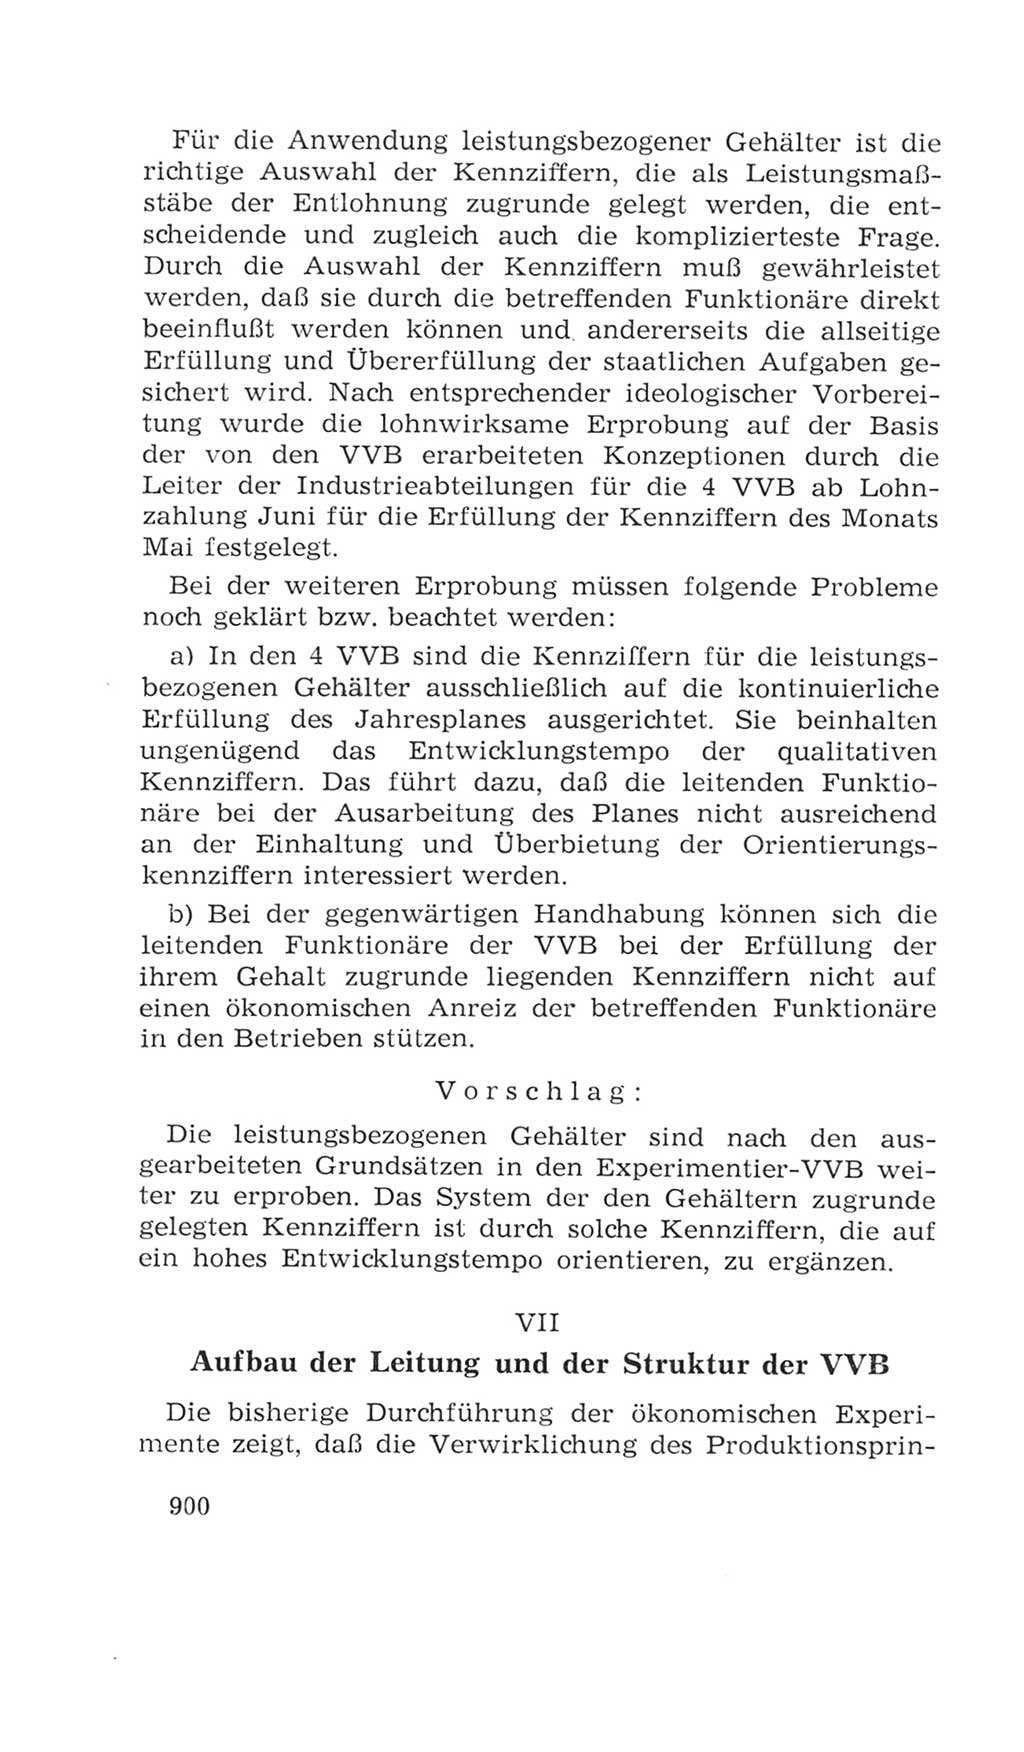 Volkskammer (VK) der Deutschen Demokratischen Republik (DDR), 4. Wahlperiode 1963-1967, Seite 900 (VK. DDR 4. WP. 1963-1967, S. 900)